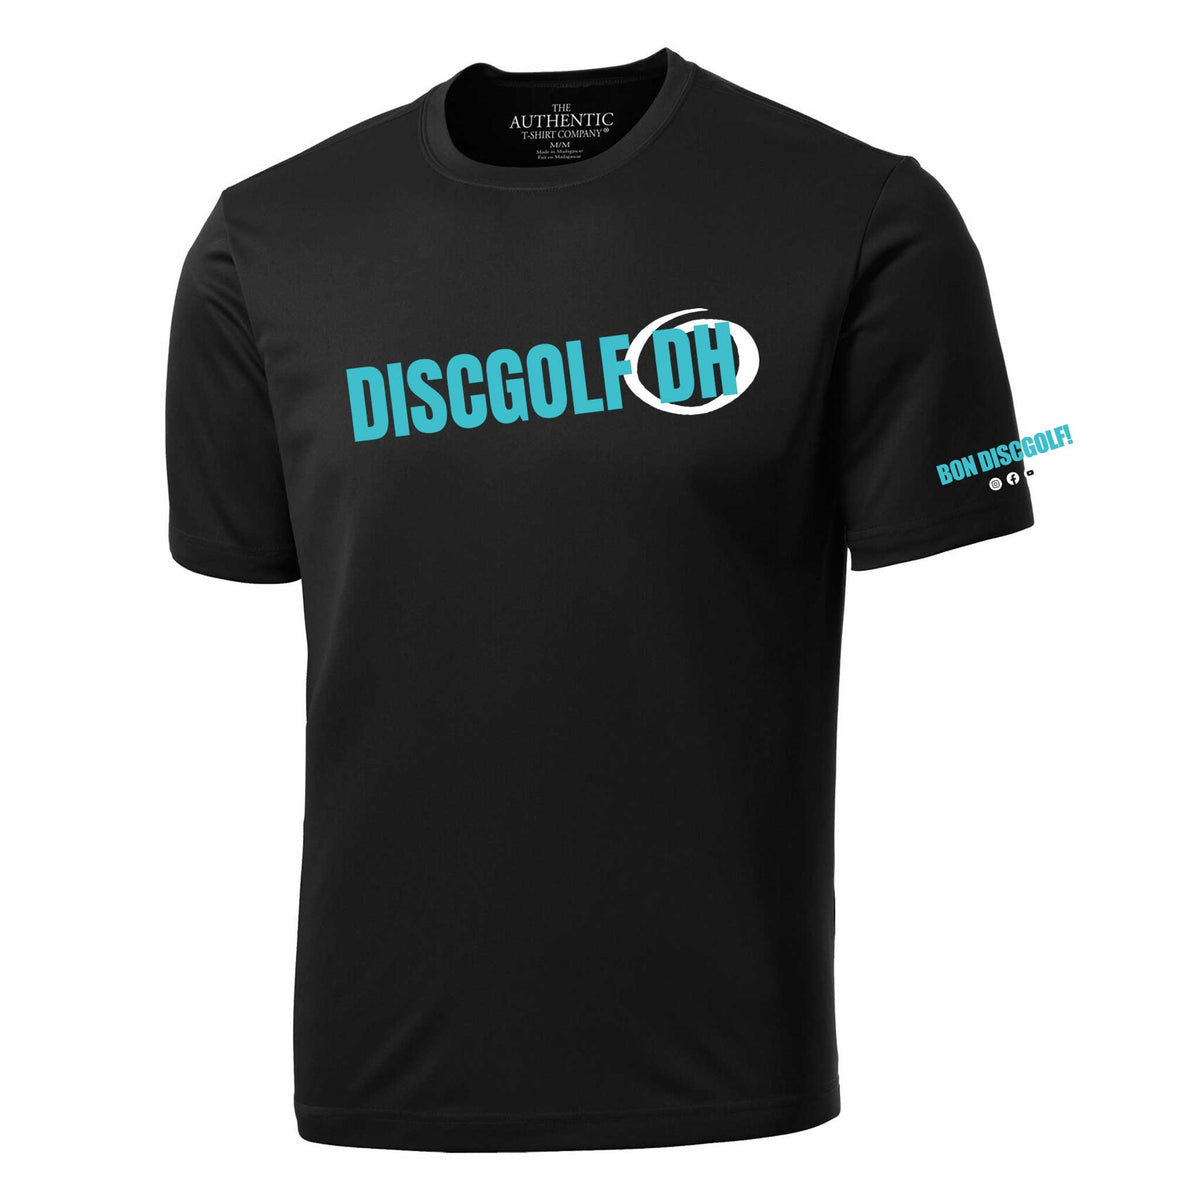 T-shirt Discgolf DH &quot;Bon Discgolf&quot; noir